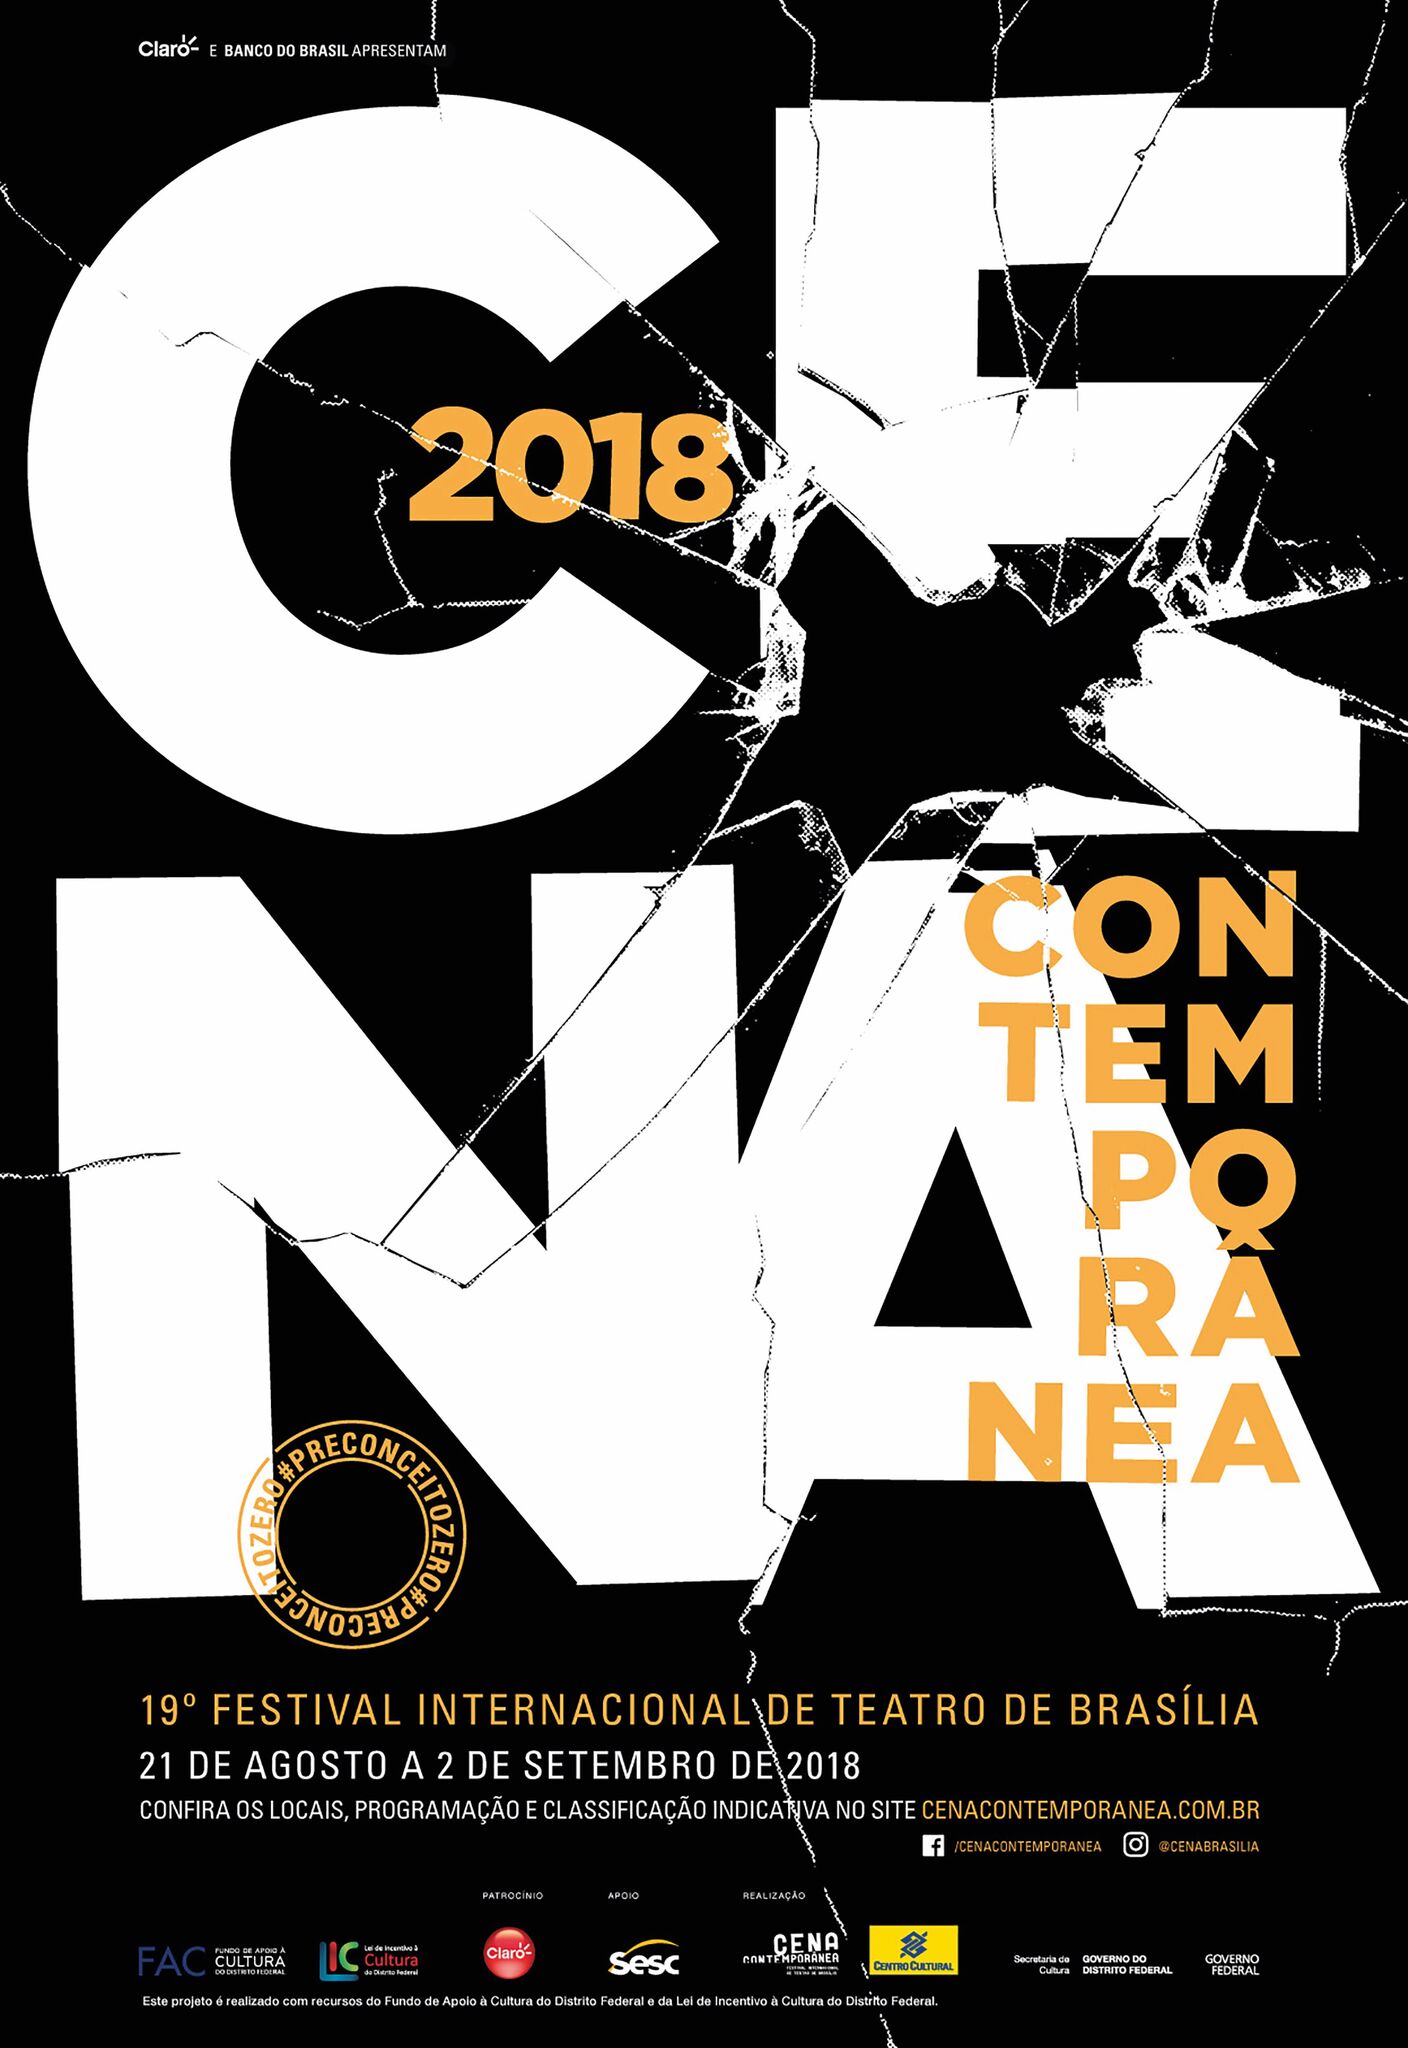 Cena Contemporânea 2018 - Festival Internacional de Teatro de Brasília